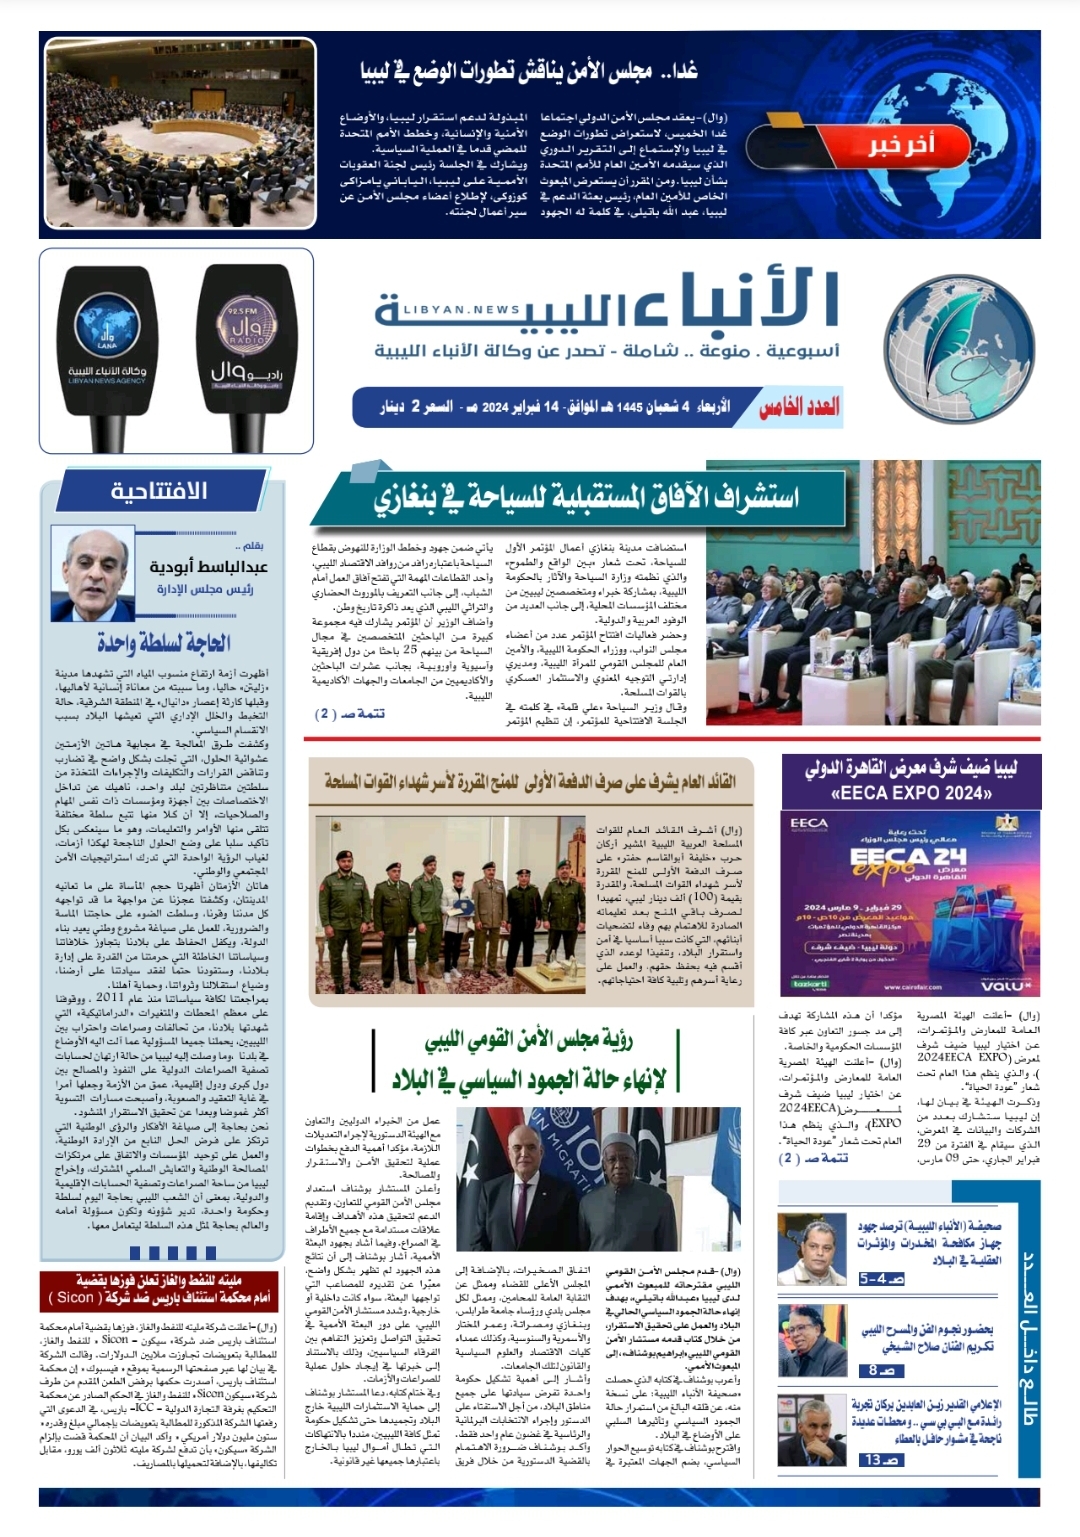 صحيفة الأنباء الليبية (العدد الخامس)